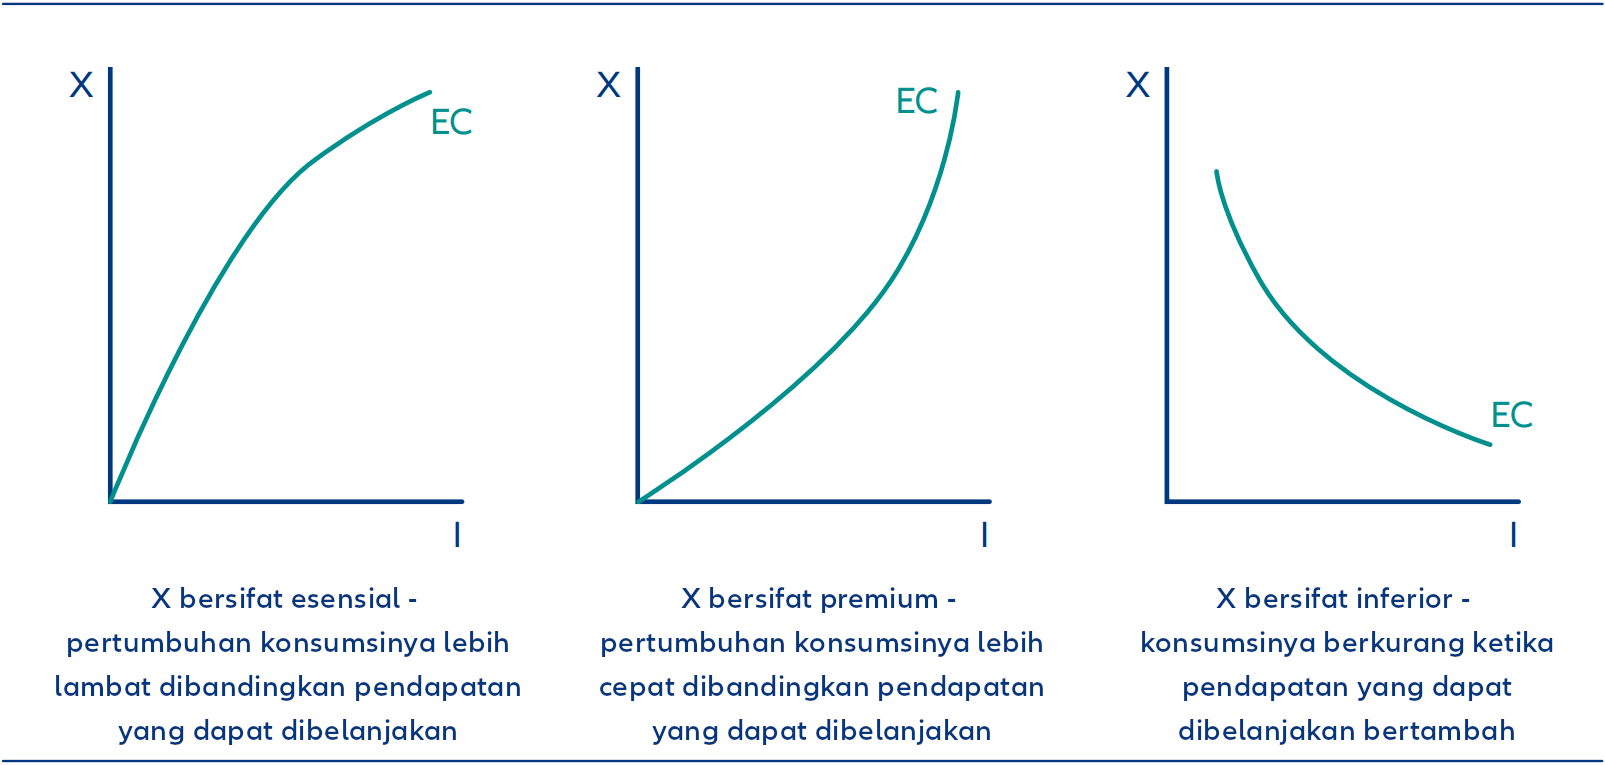 Kurva Engel (Engel Curve/EC) untuk barang esensial, premium, dan inferior